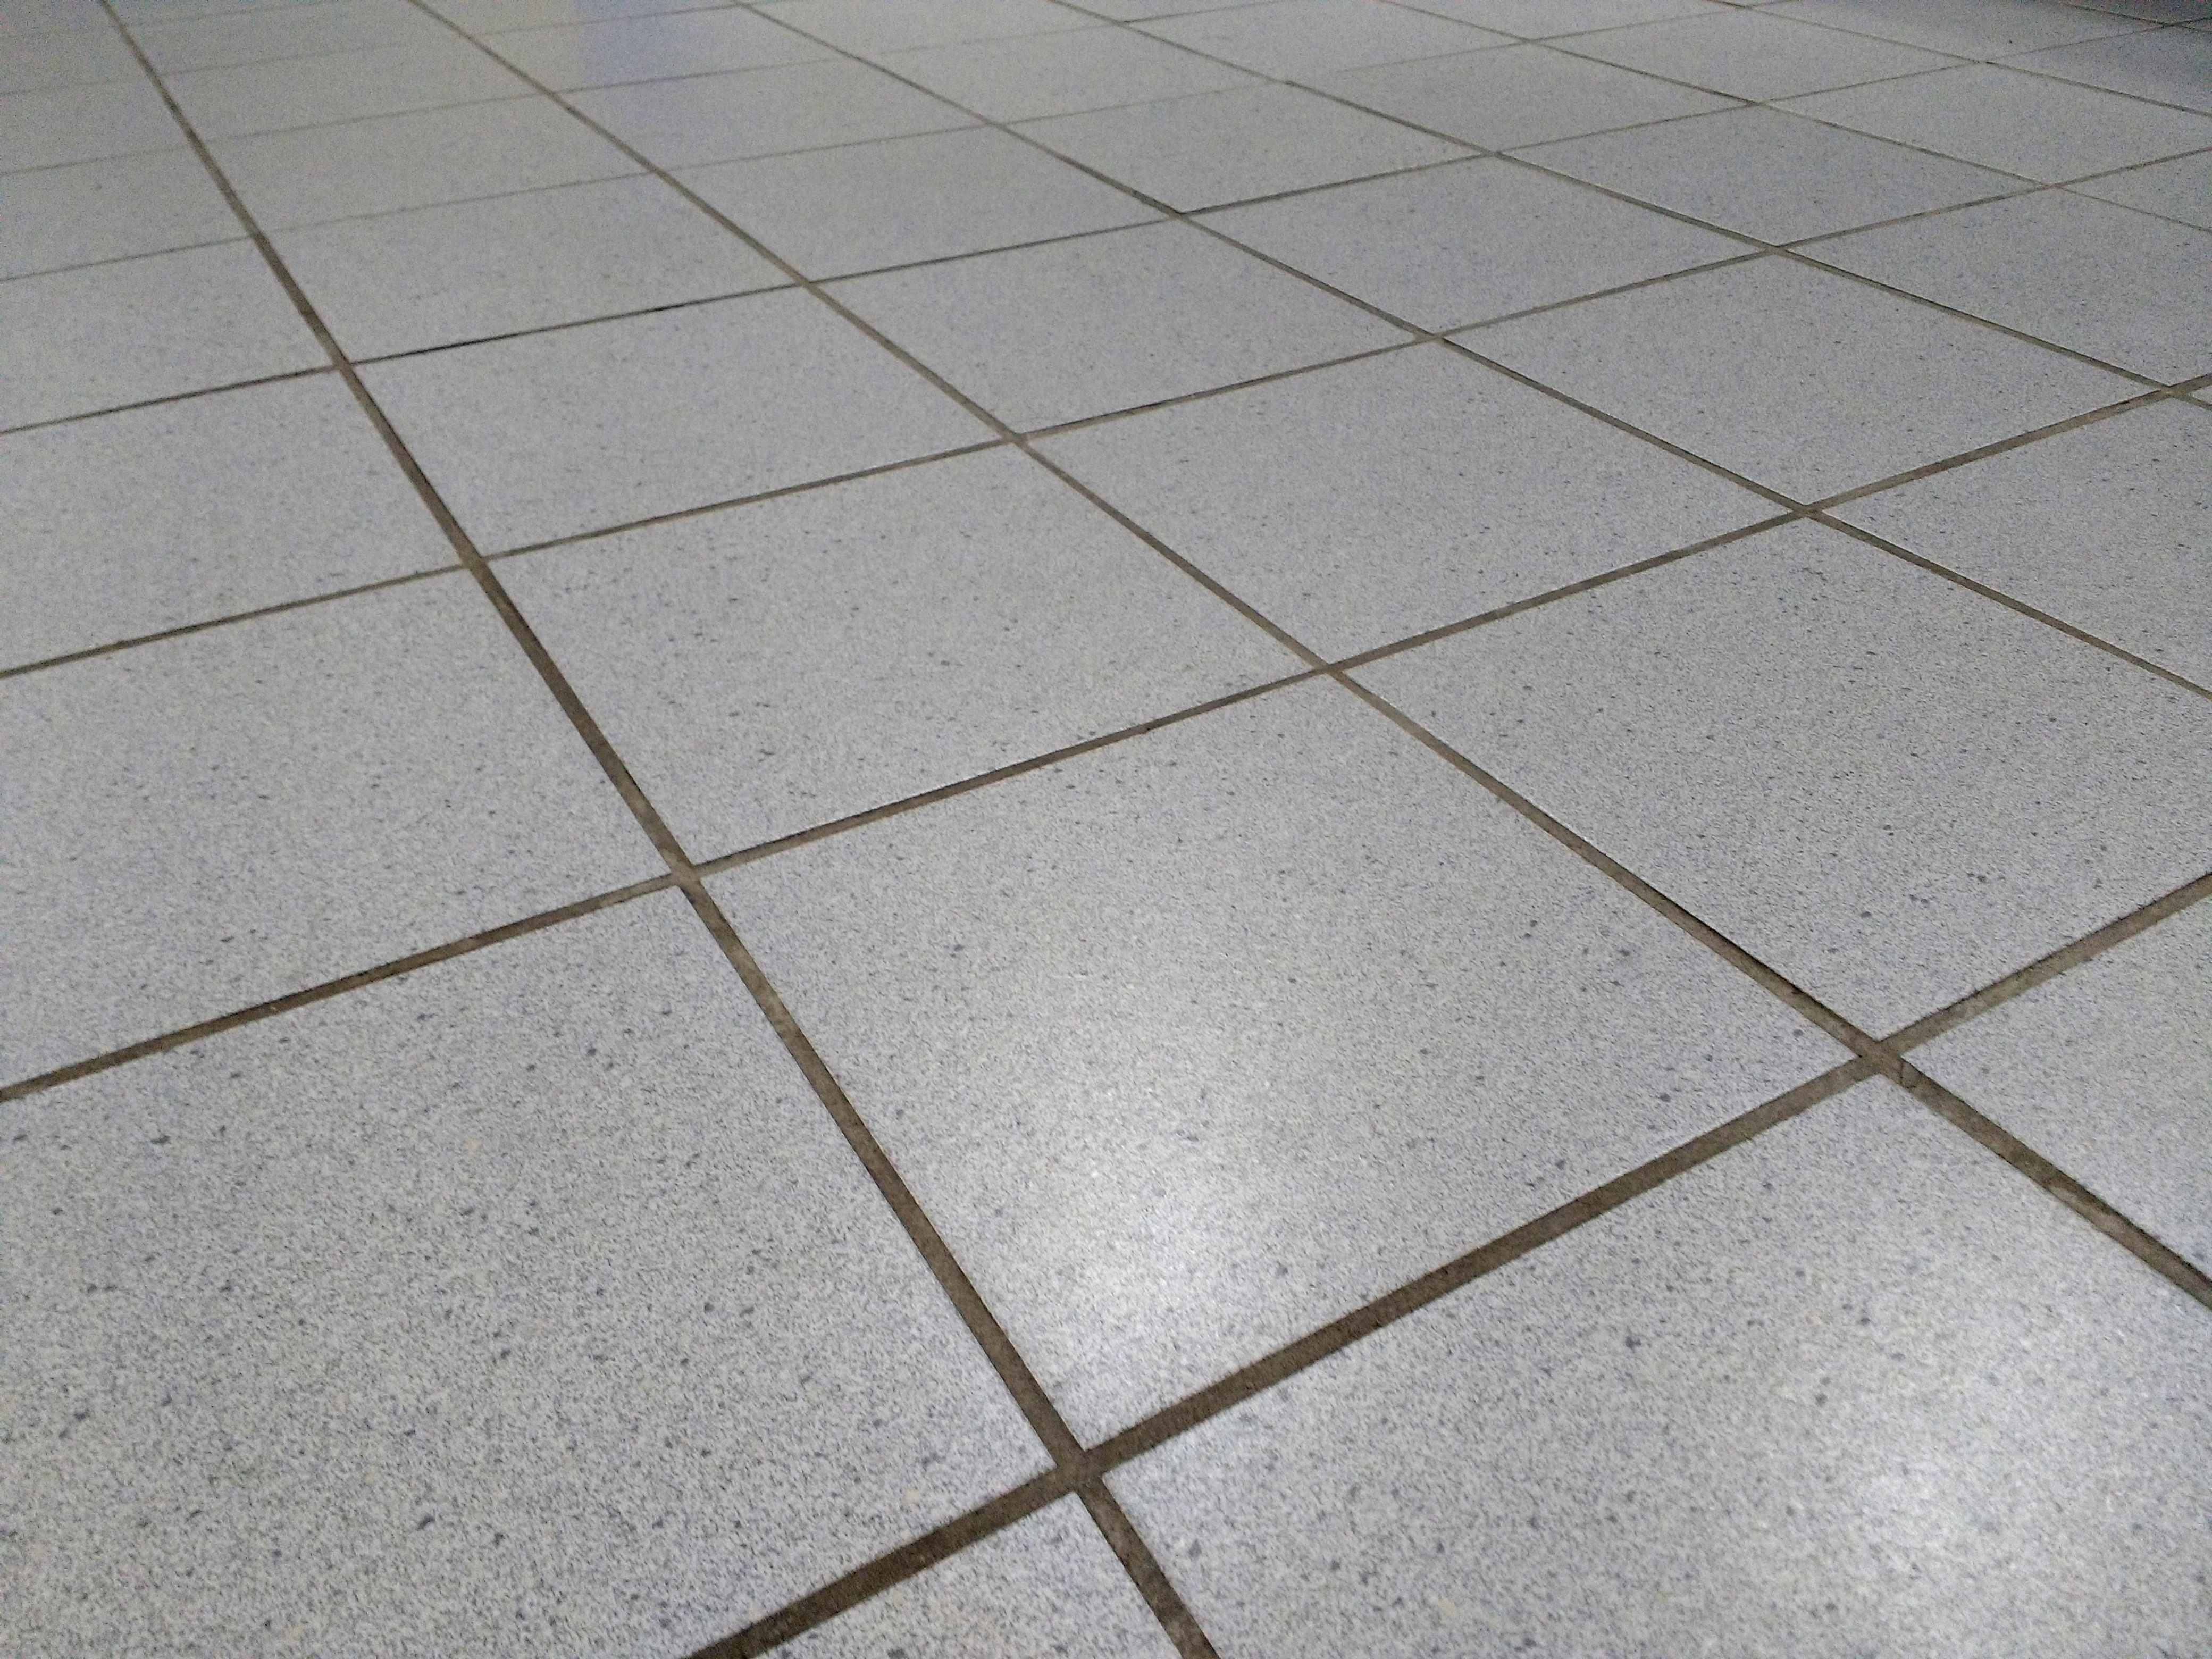 ceramic tile flooring